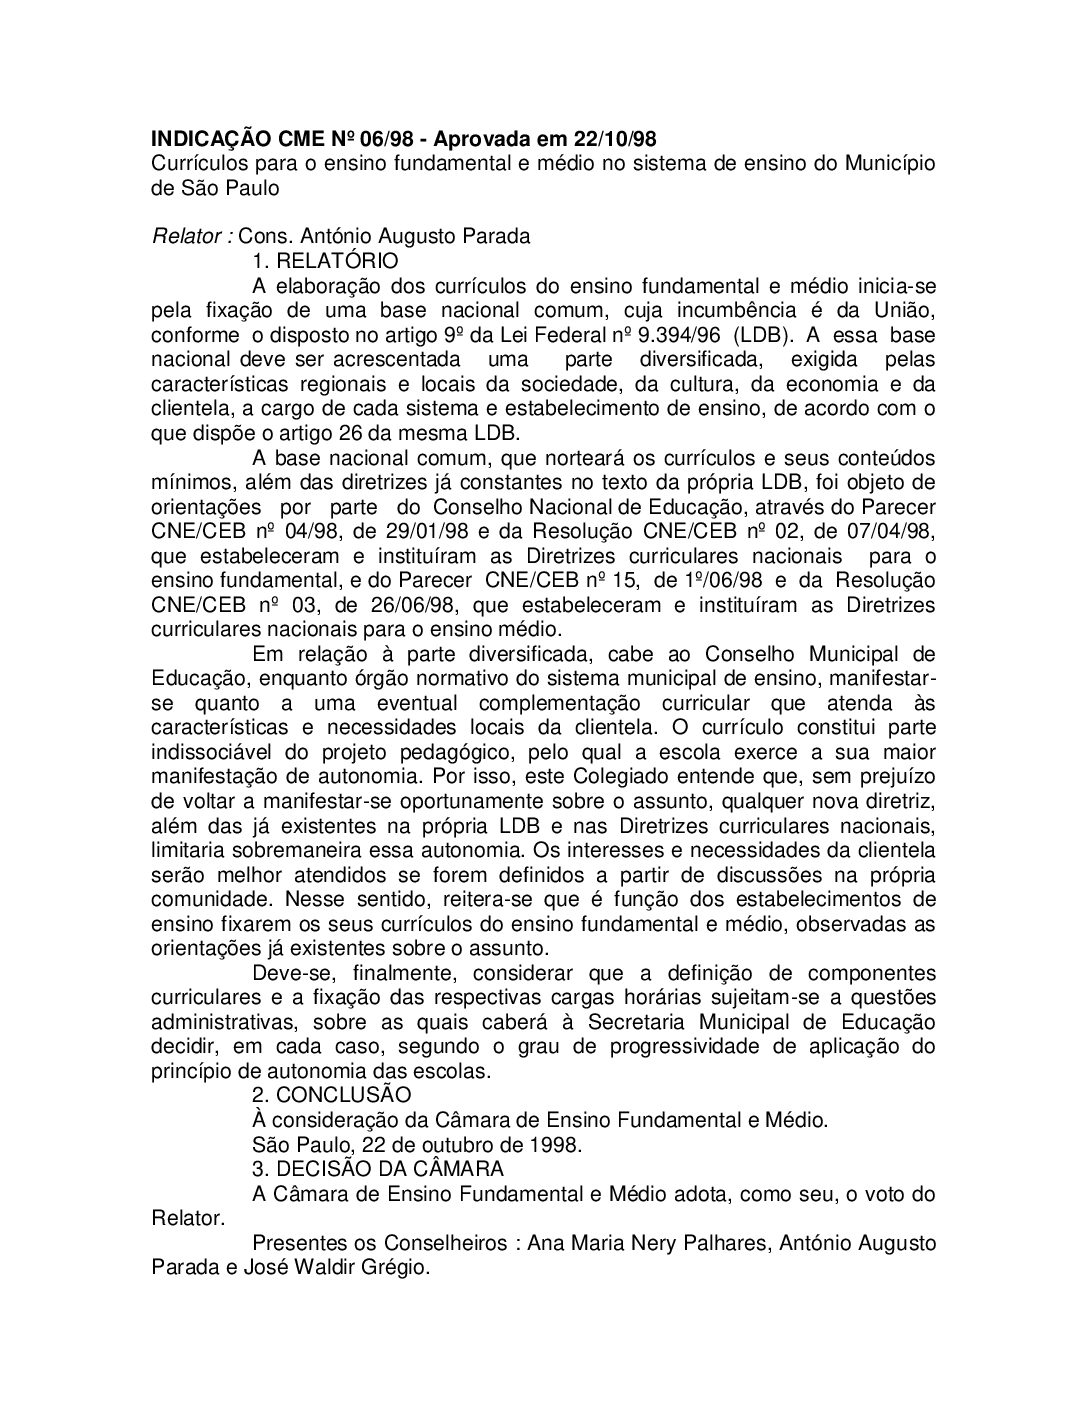 Indicação CME nº 06/1998 - Currículos para o ensino fundamental e médio no sistema de ensino do Município de São Paulo